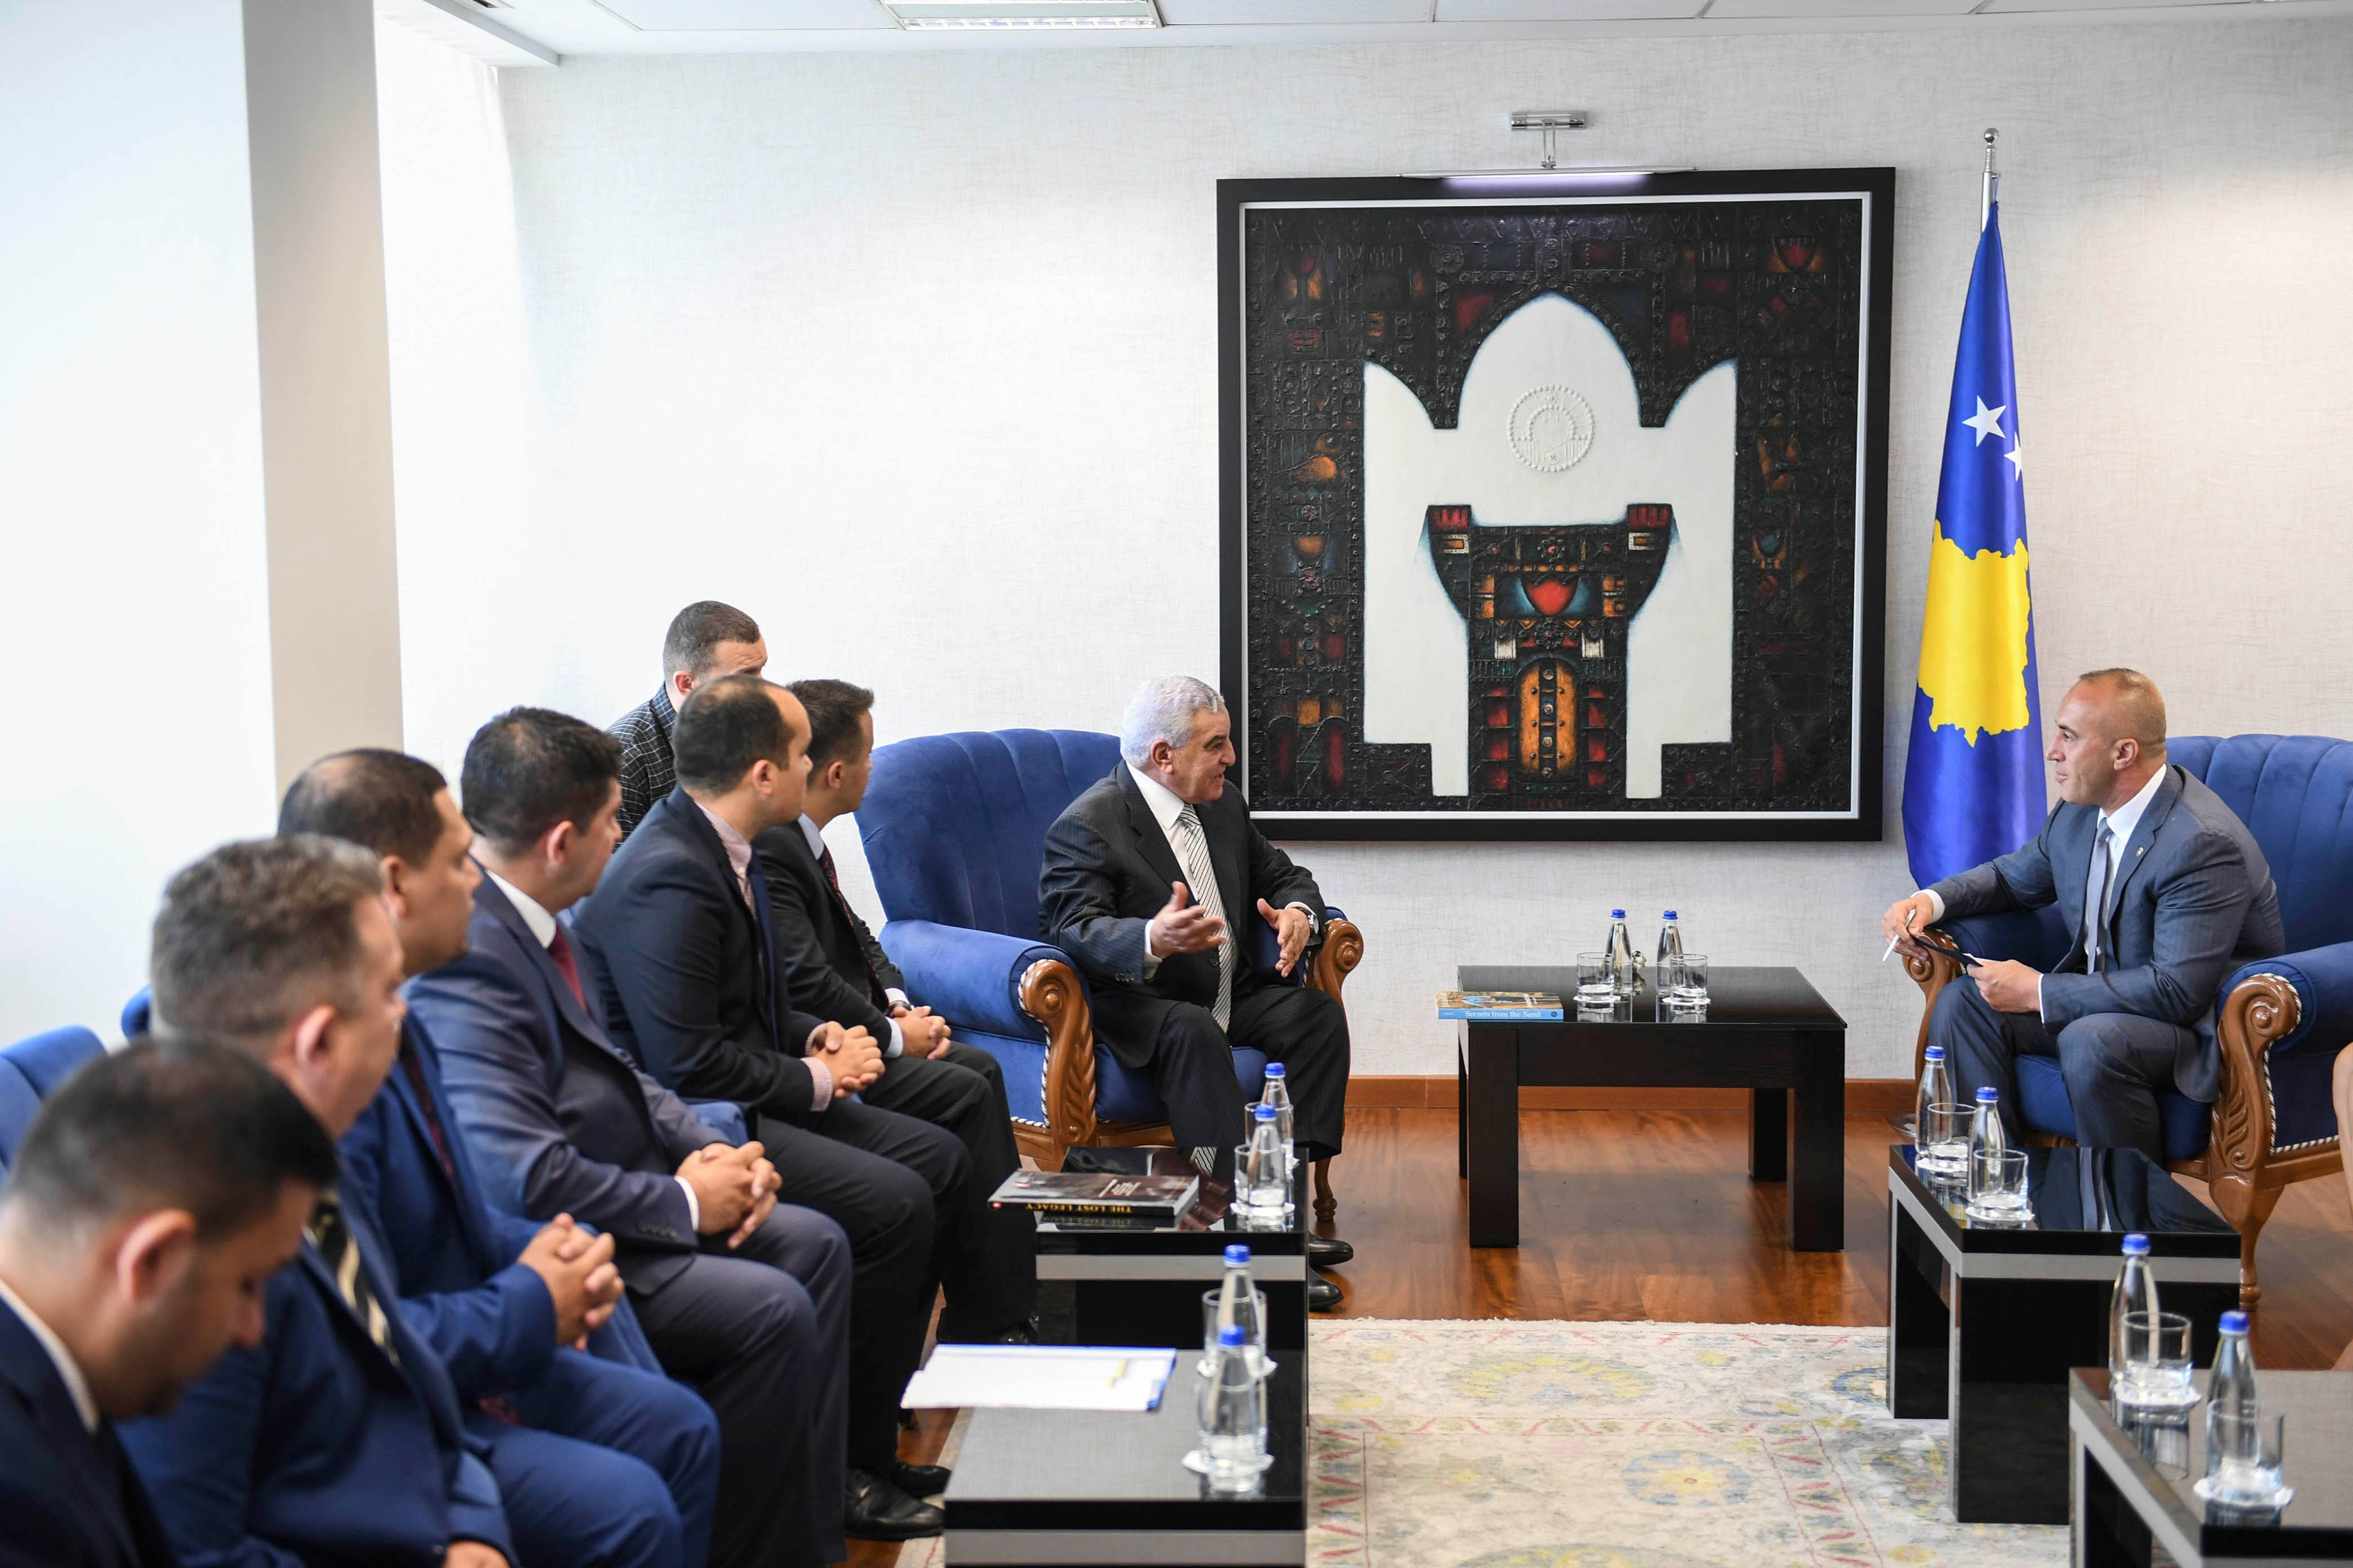 رئيس وزراء كوسوفو يهدى زاهى حواس شعار الدولة  (4)